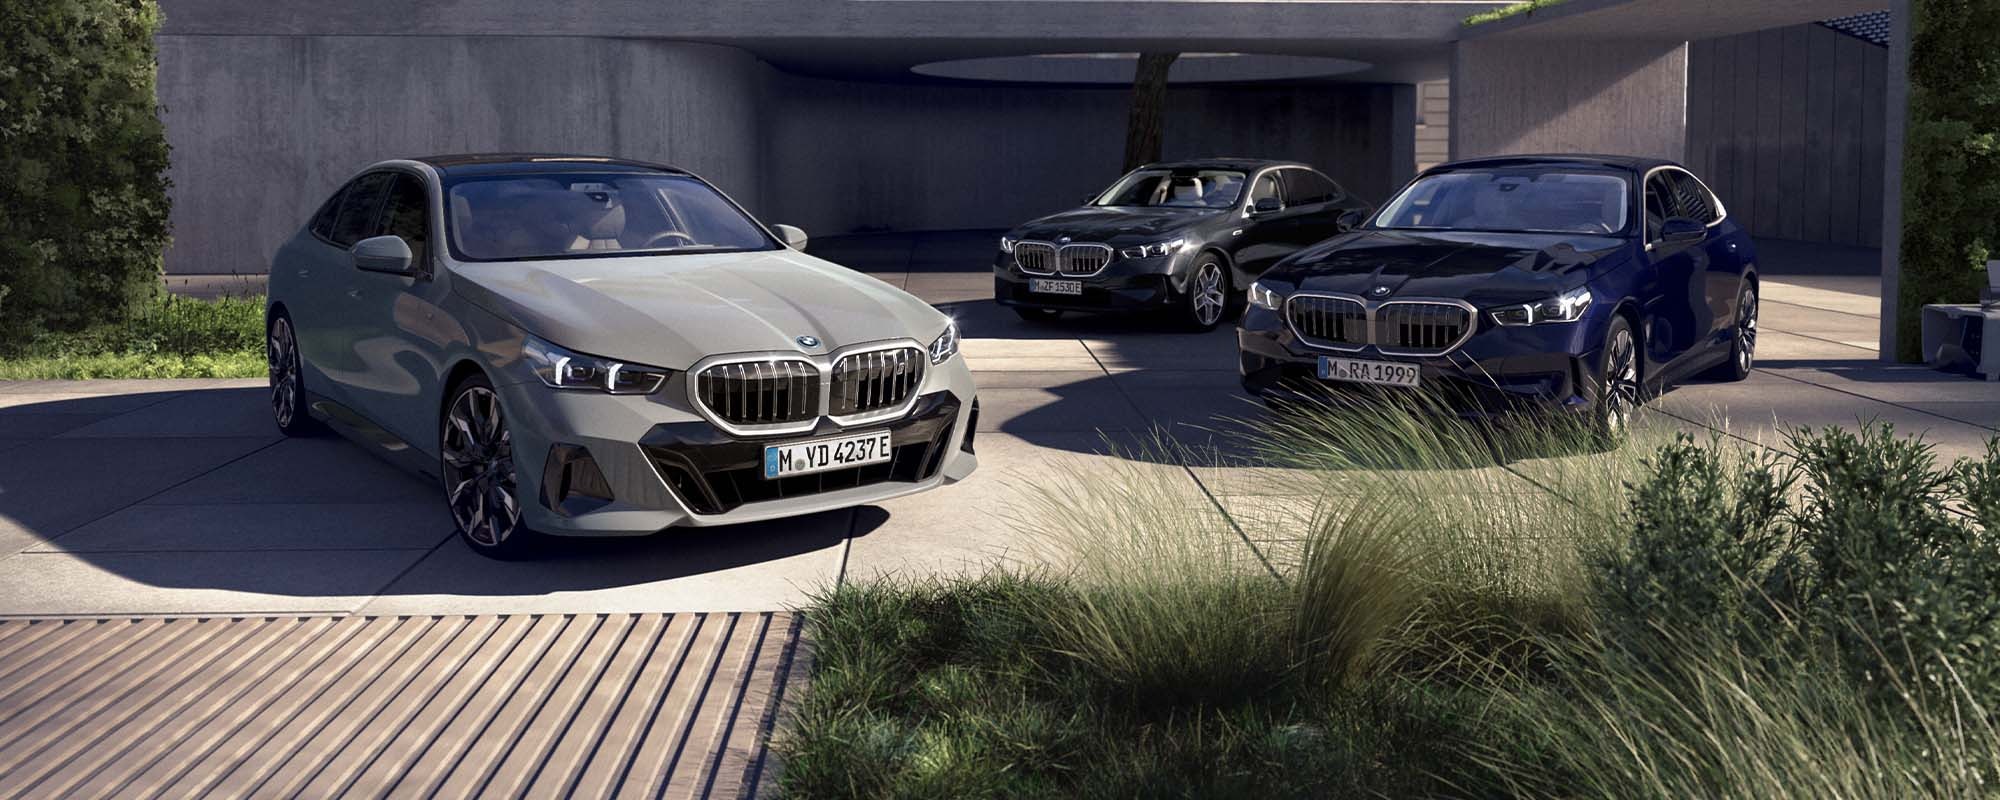 BMW ahg – Ihr kompetenter BMW Autohändler vor Ort